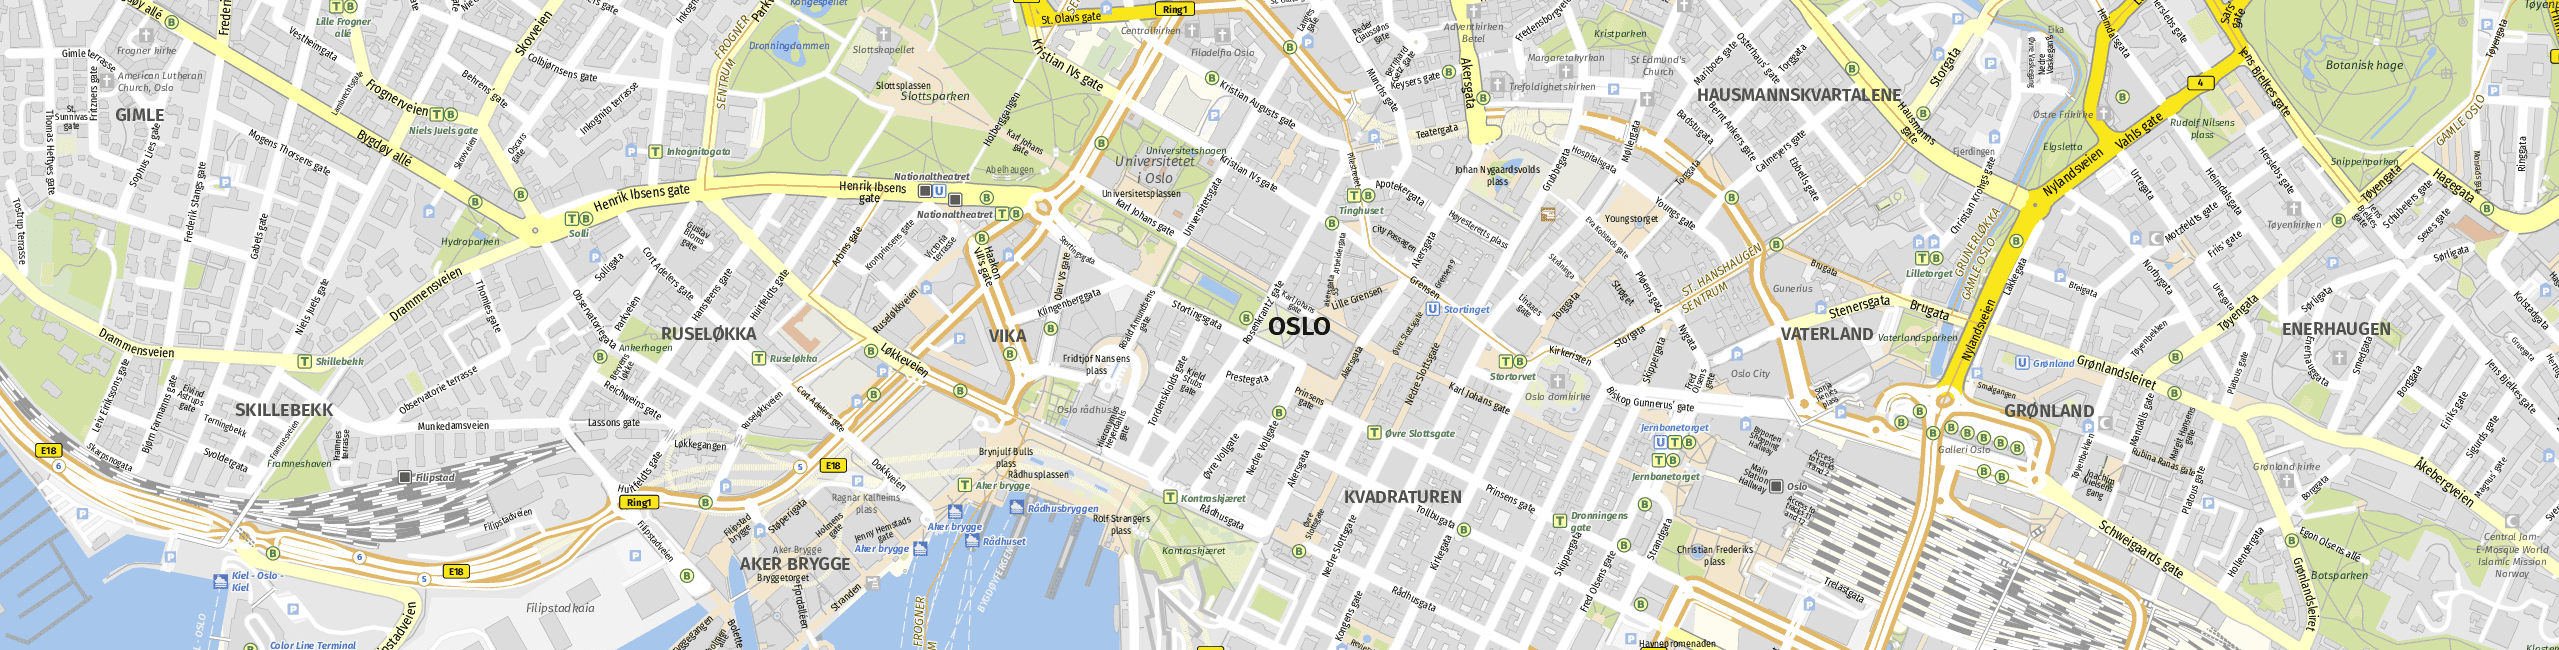 Stadtplan Oslo zum Downloaden.